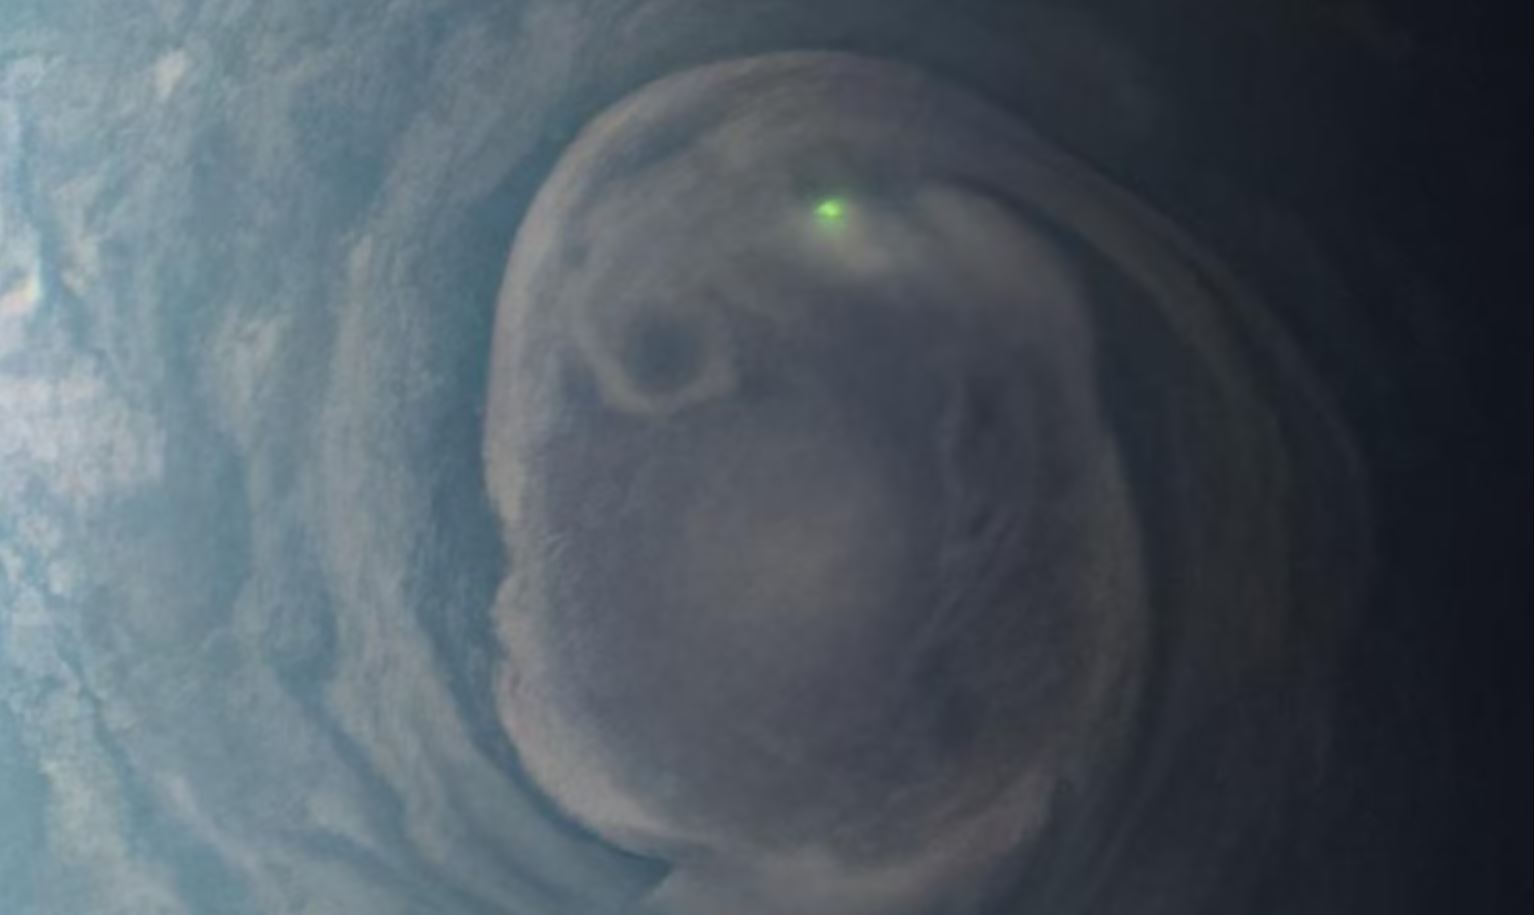 NASA'nın Juno Uzay Aracı, Jüpiter'de Gizemli Yeşil Işık Flaşı Yakaladı!